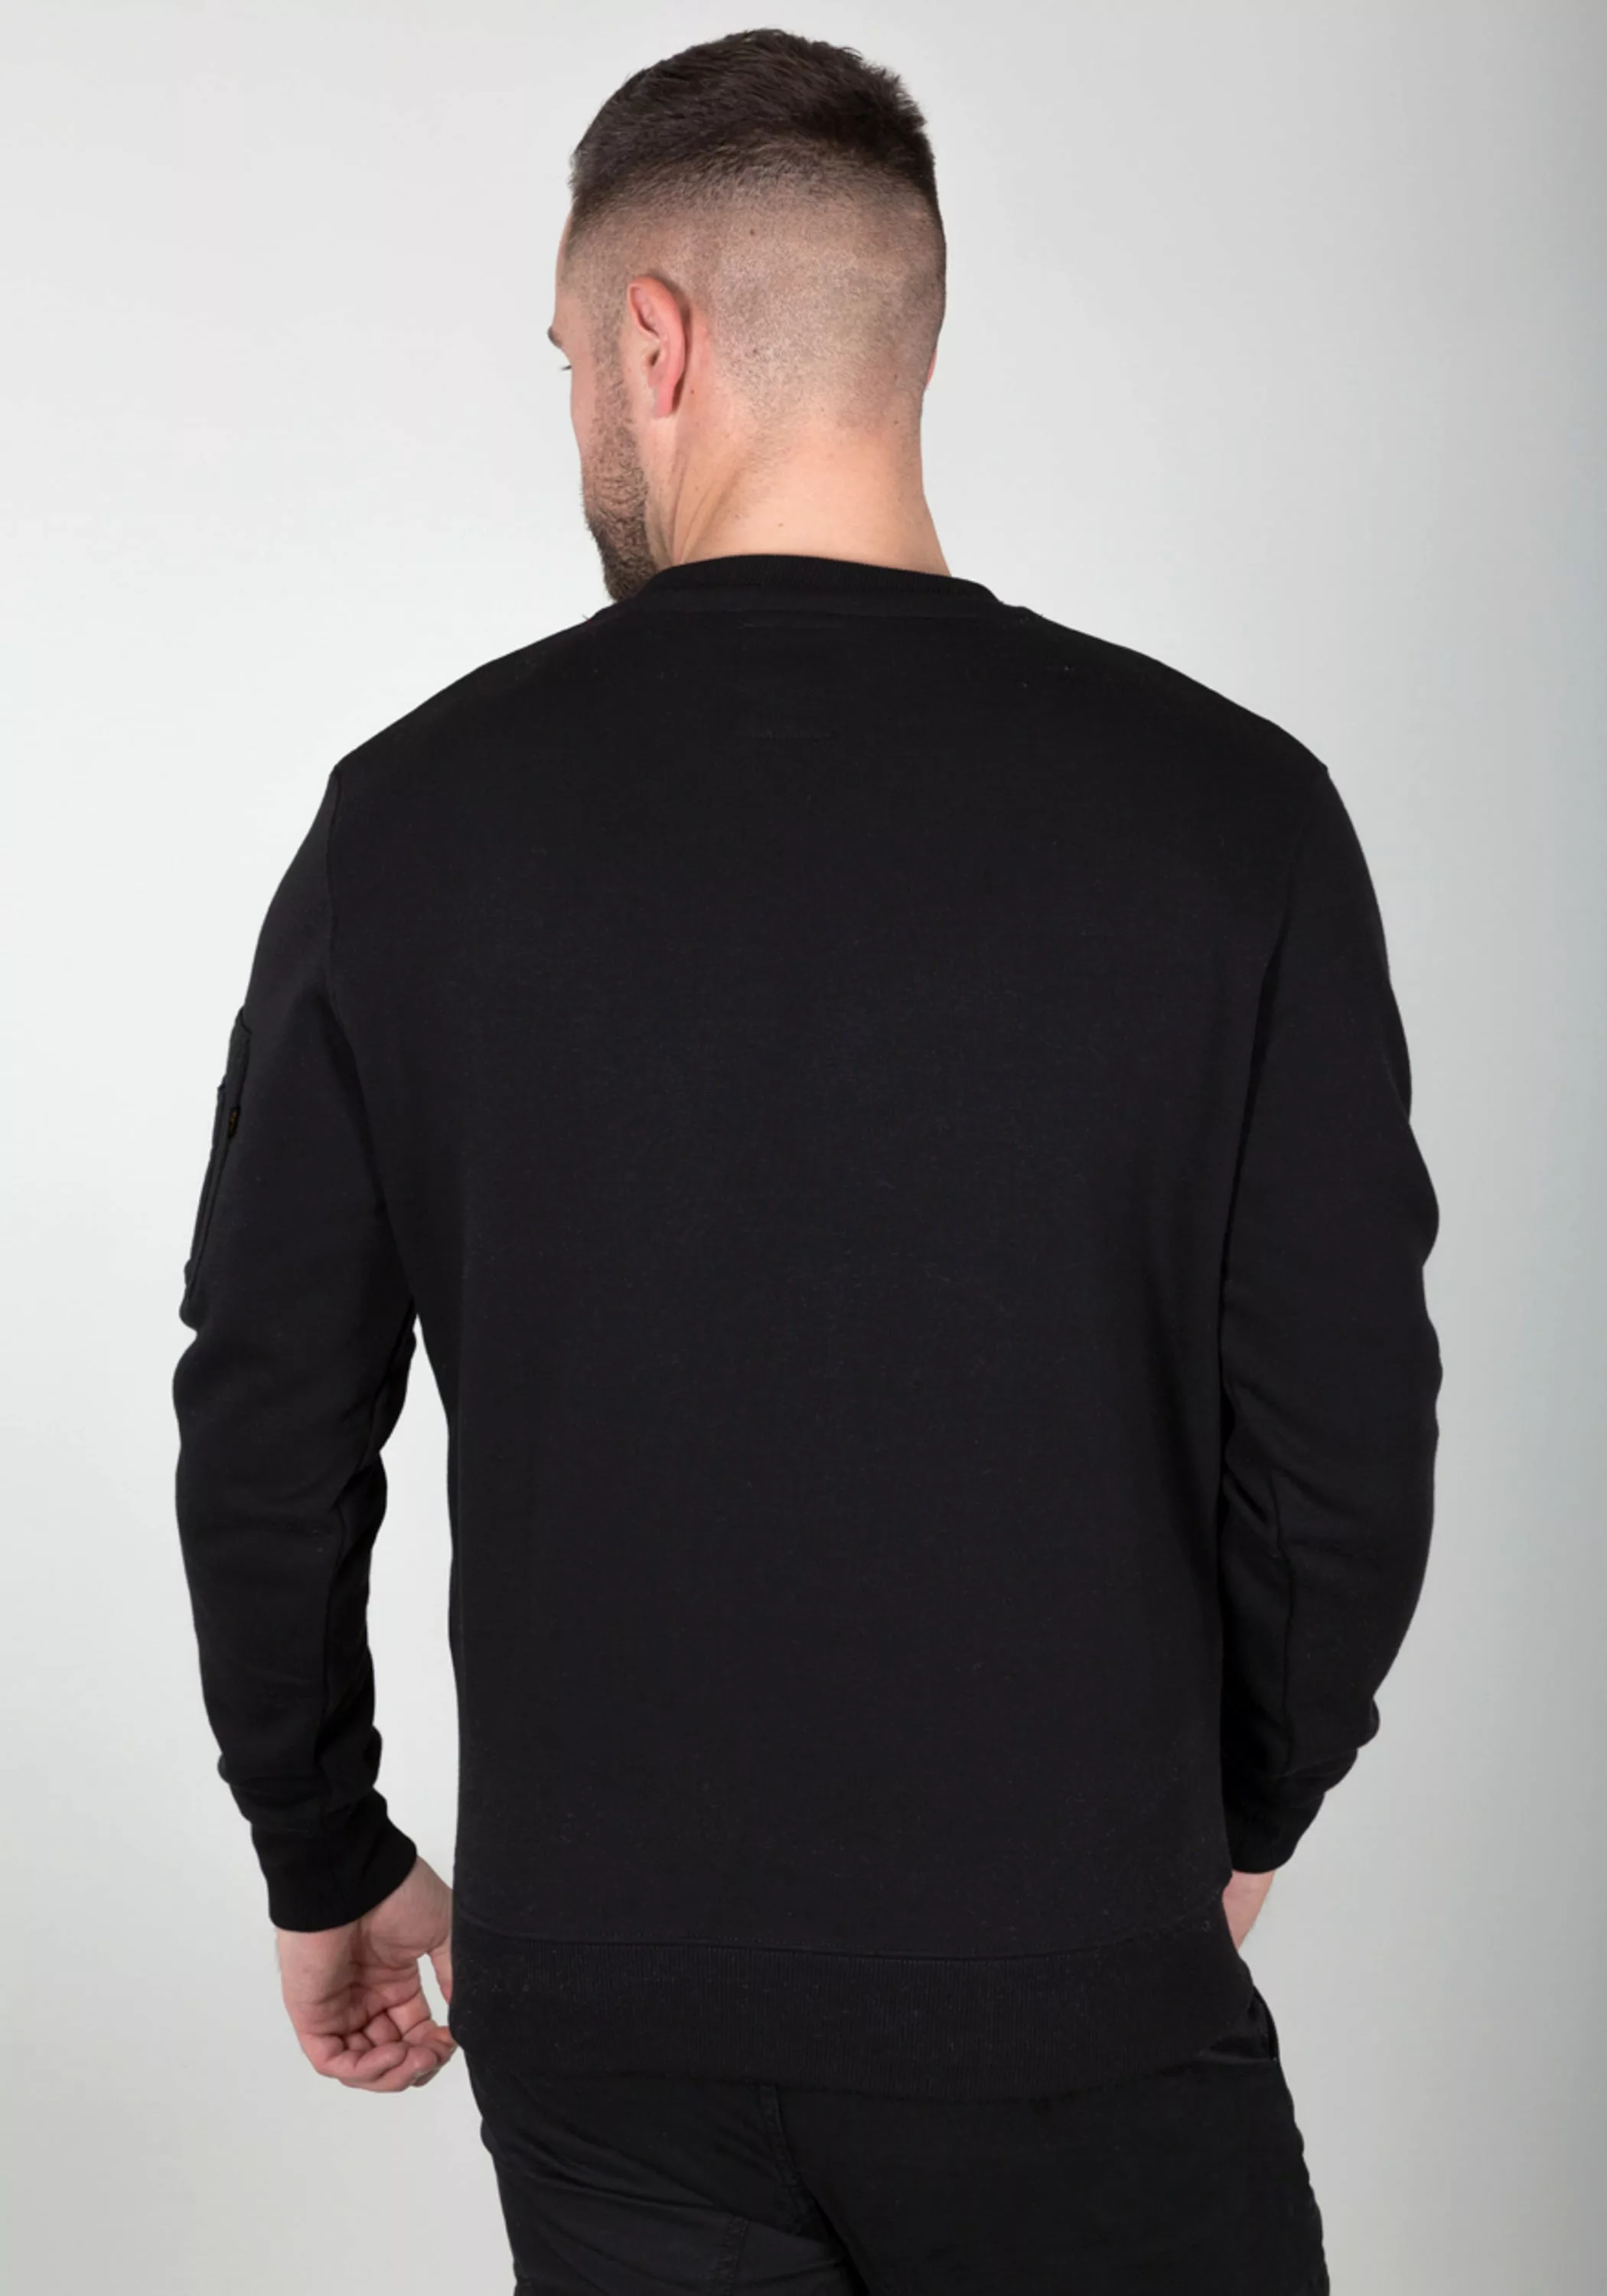 Alpha Industries Sweater "Alpha Industries Men - Sweatshirts Alpha Label Sw günstig online kaufen